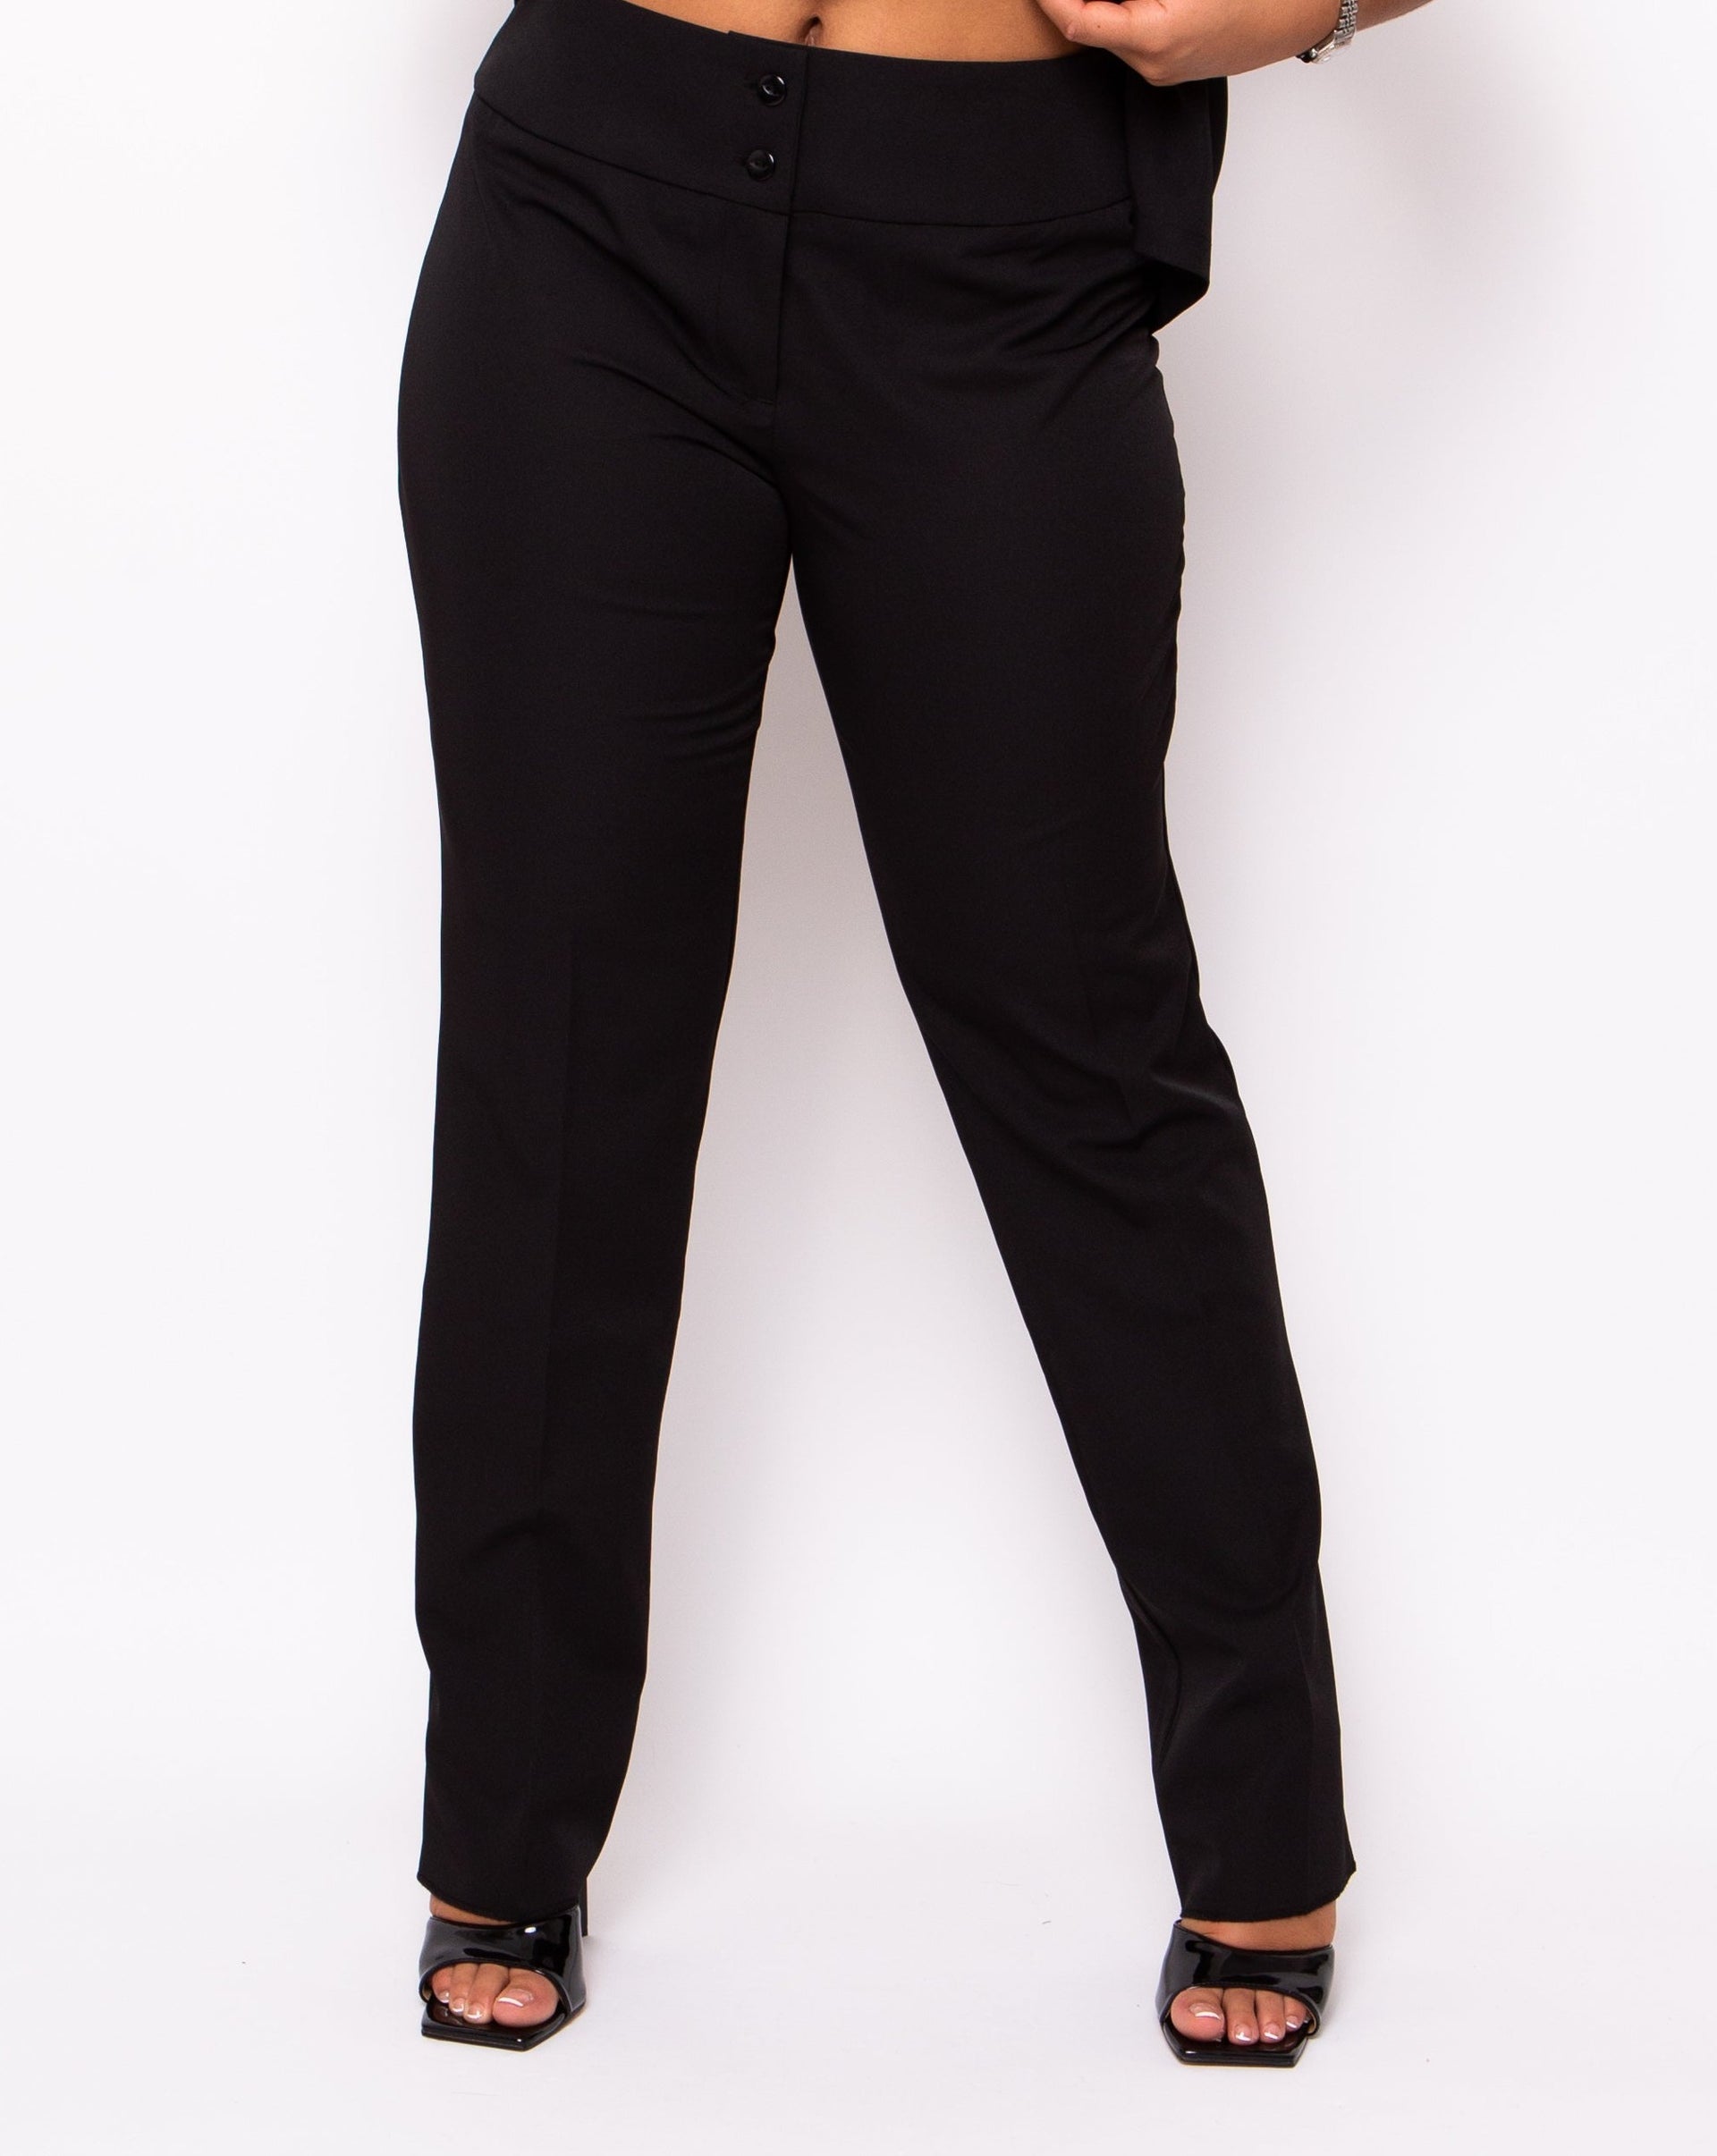 Black Trousers for Women  Female Black Beauty Work Formal Pants – Salonwear